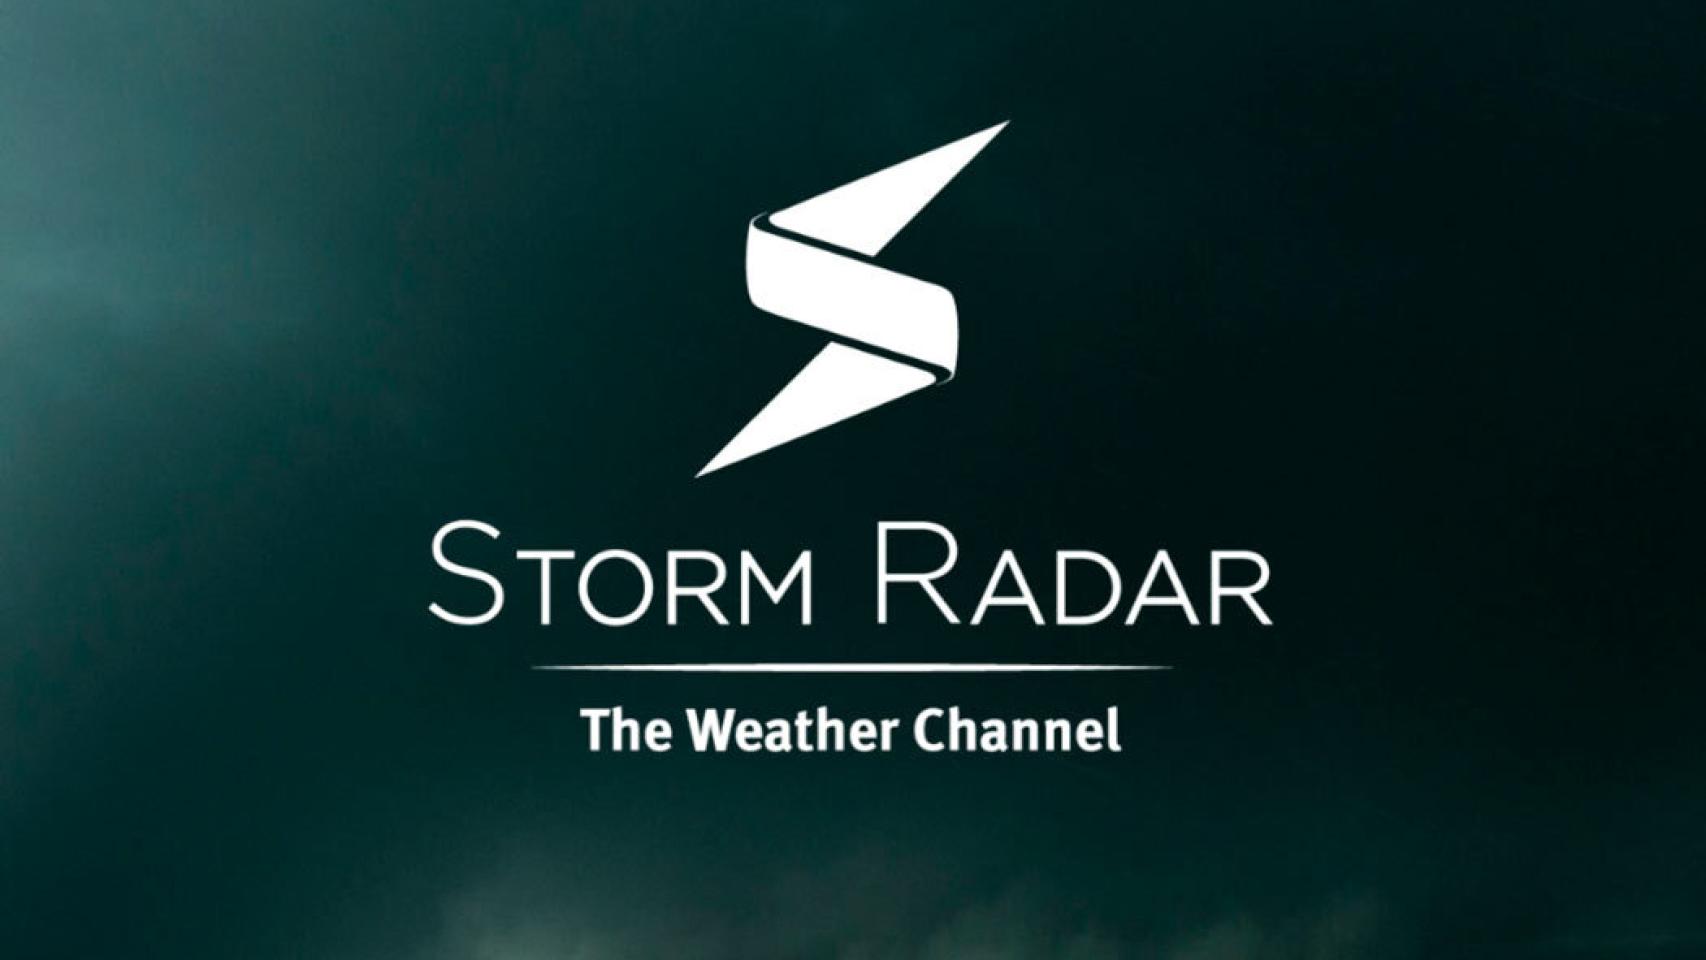 Nuevo radar del tiempo de The Weather Channel: Storm Radar